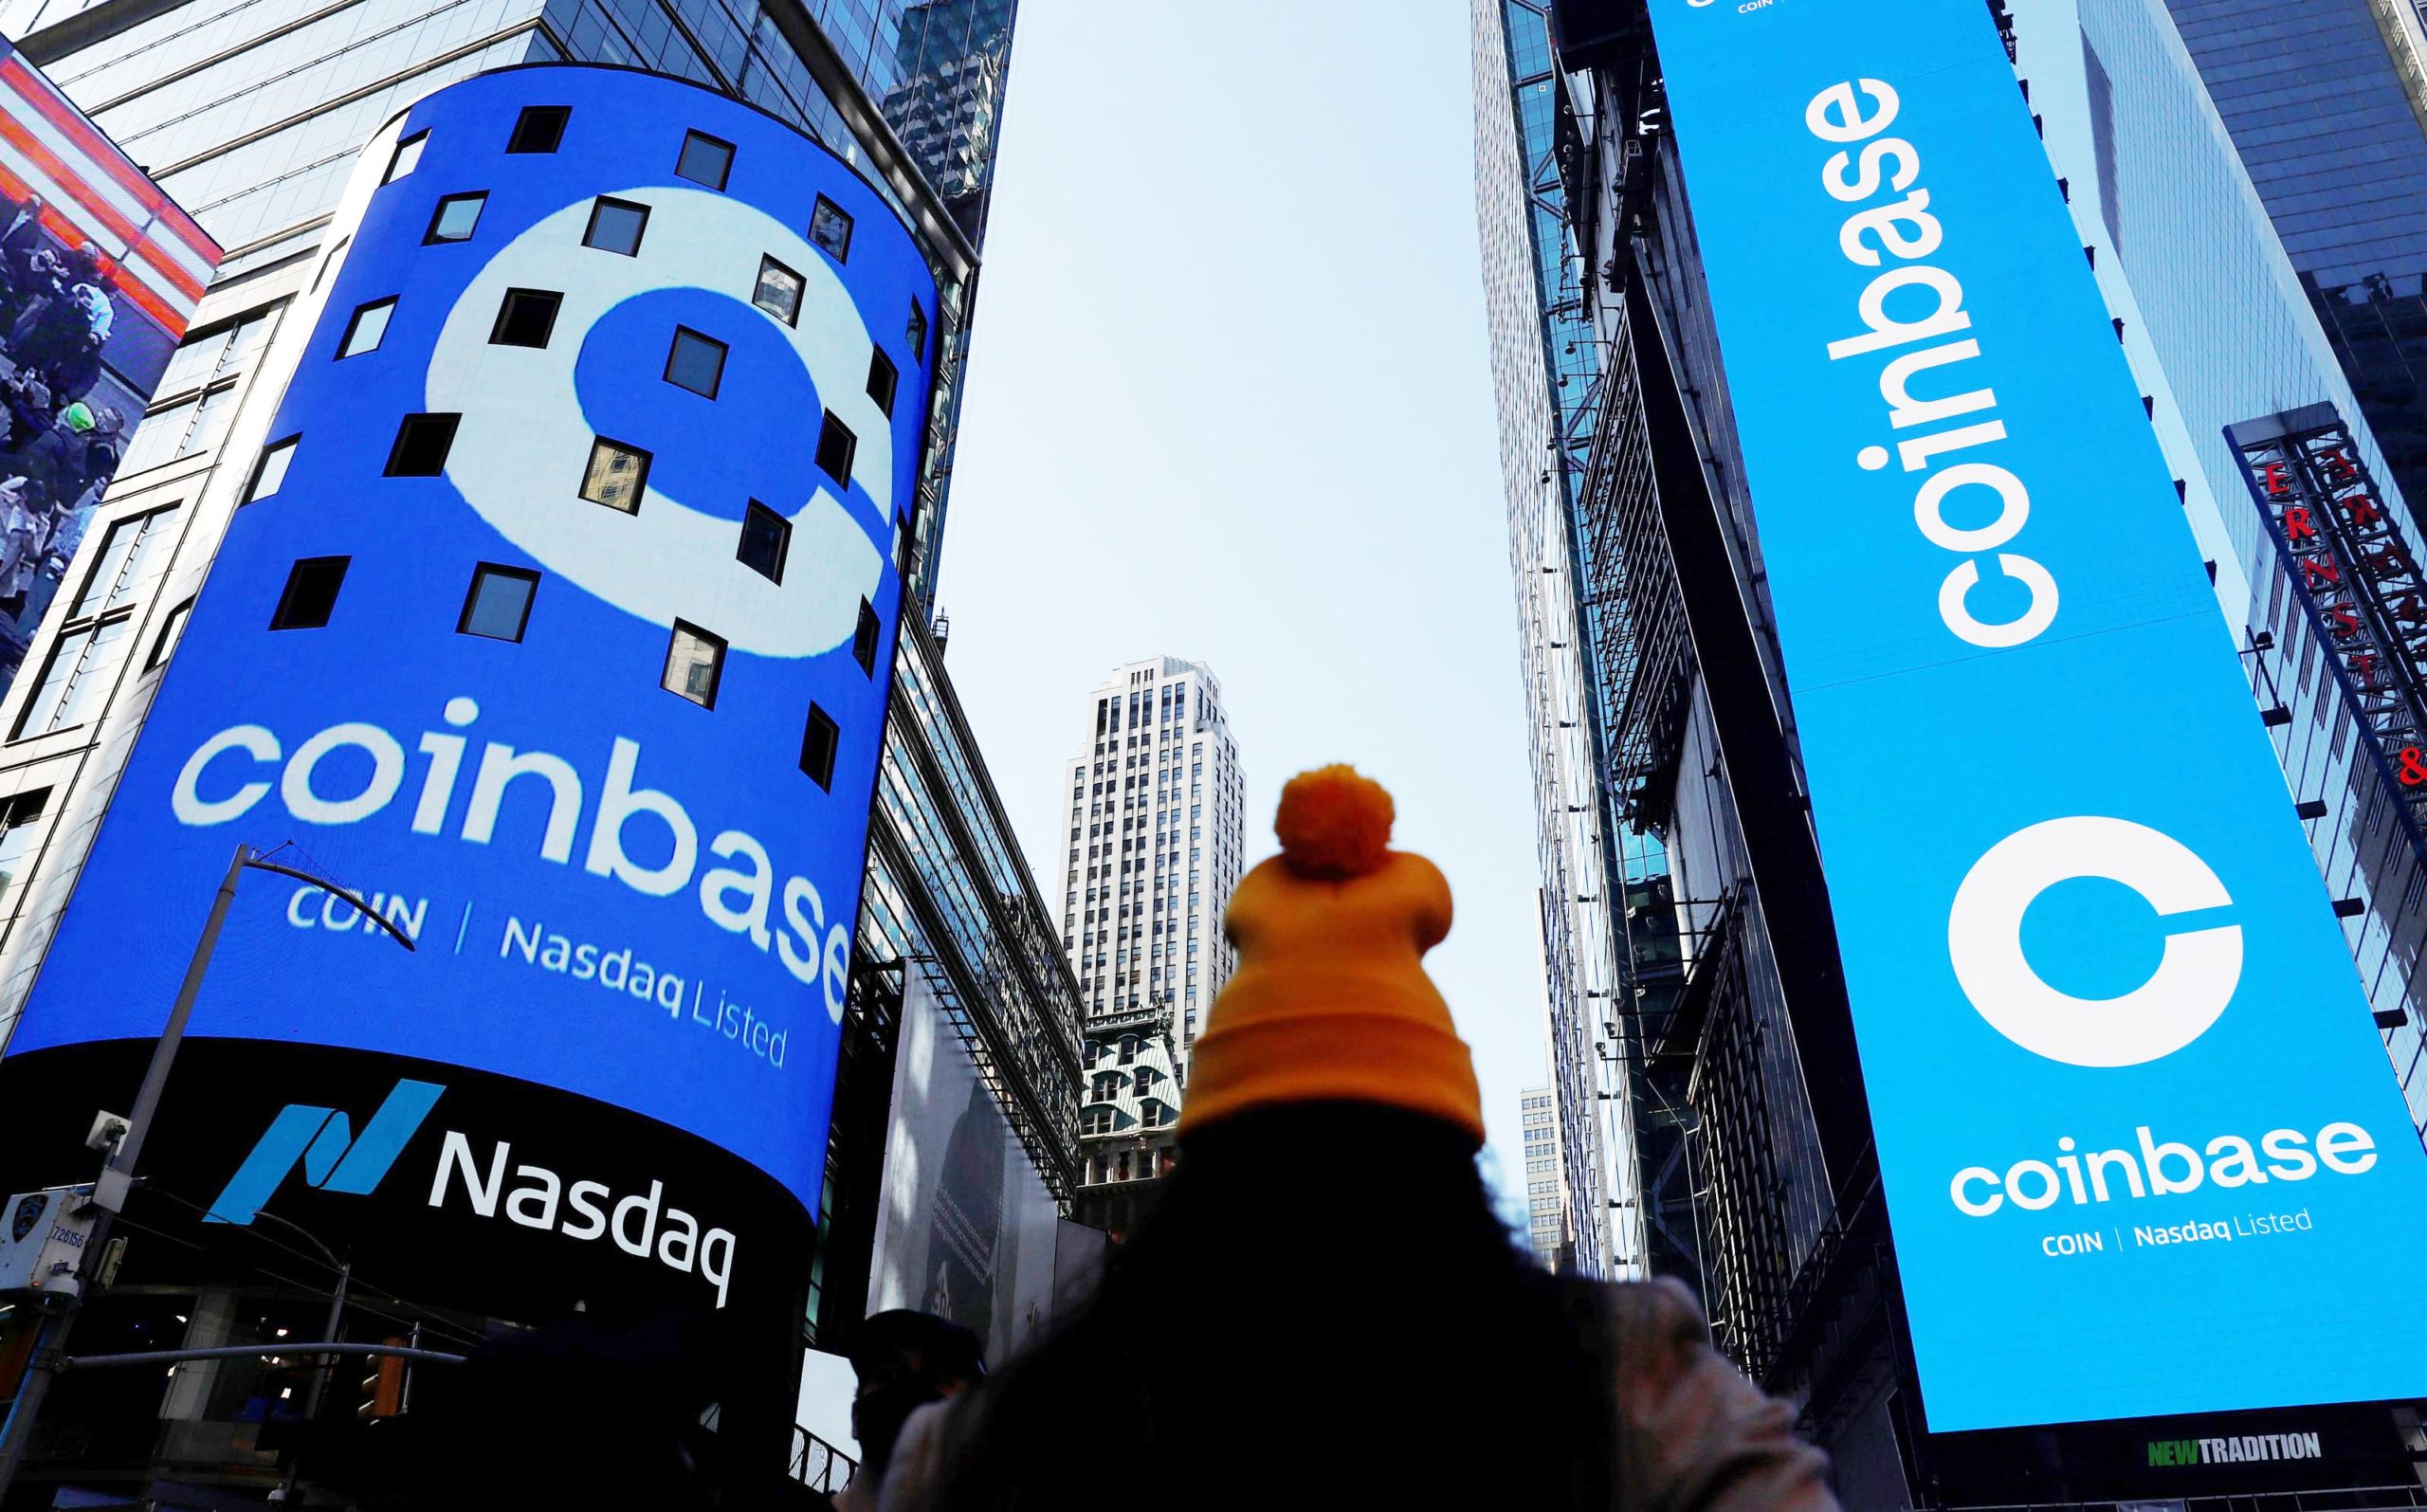 Coinbase valued at $86B closes at $328.28 per share in its ...